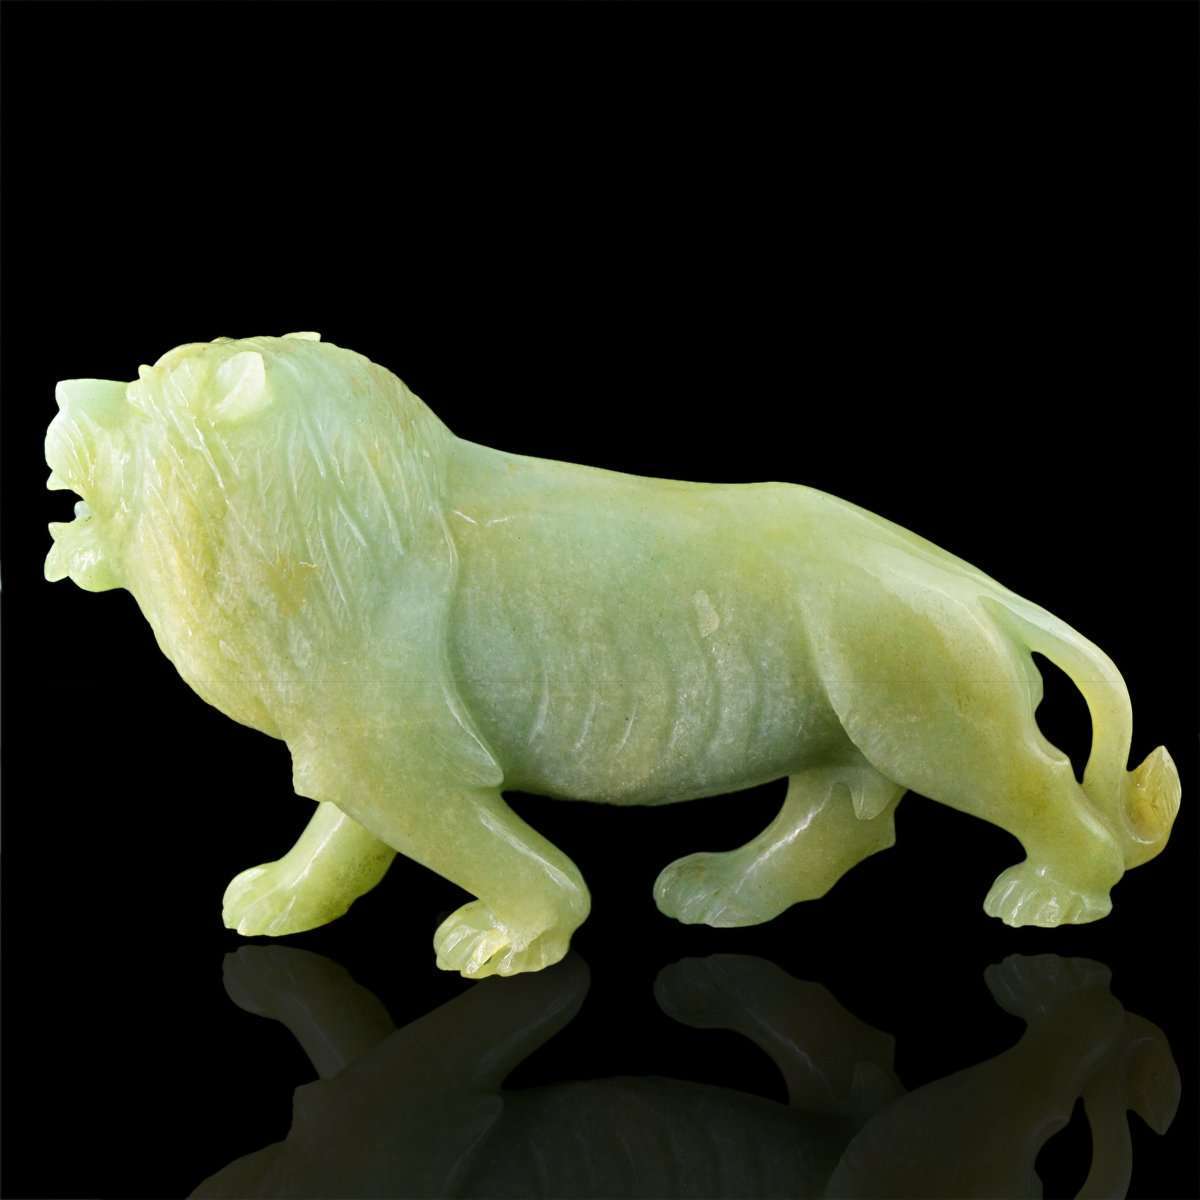 gemsmore:SOLD OUT : Genuine Green Aventurine Lion